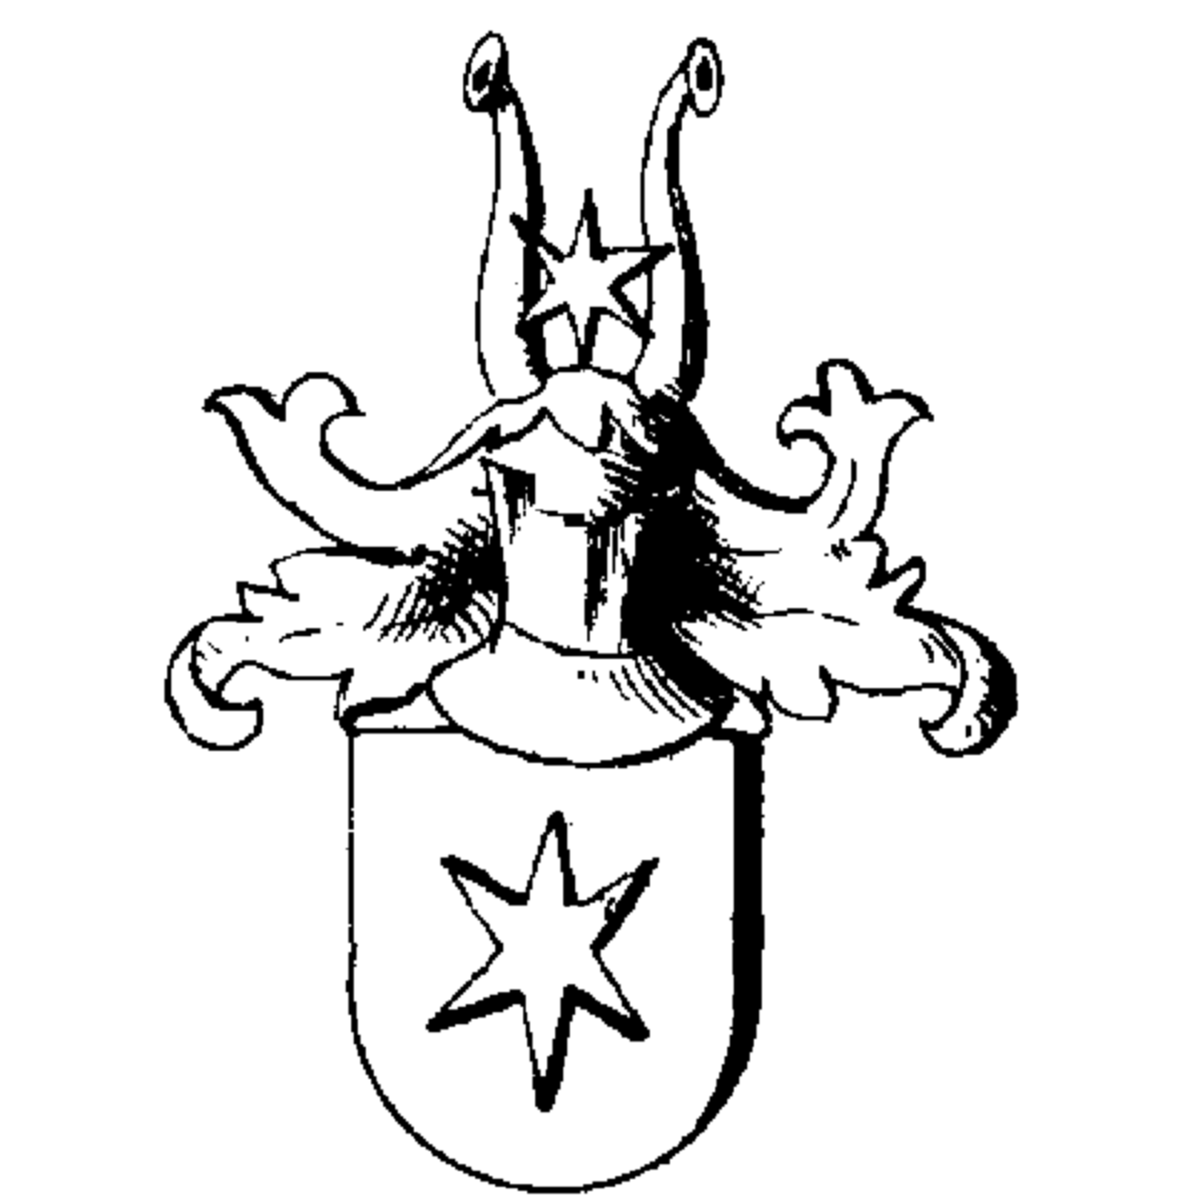 Coat of arms of family Morandi